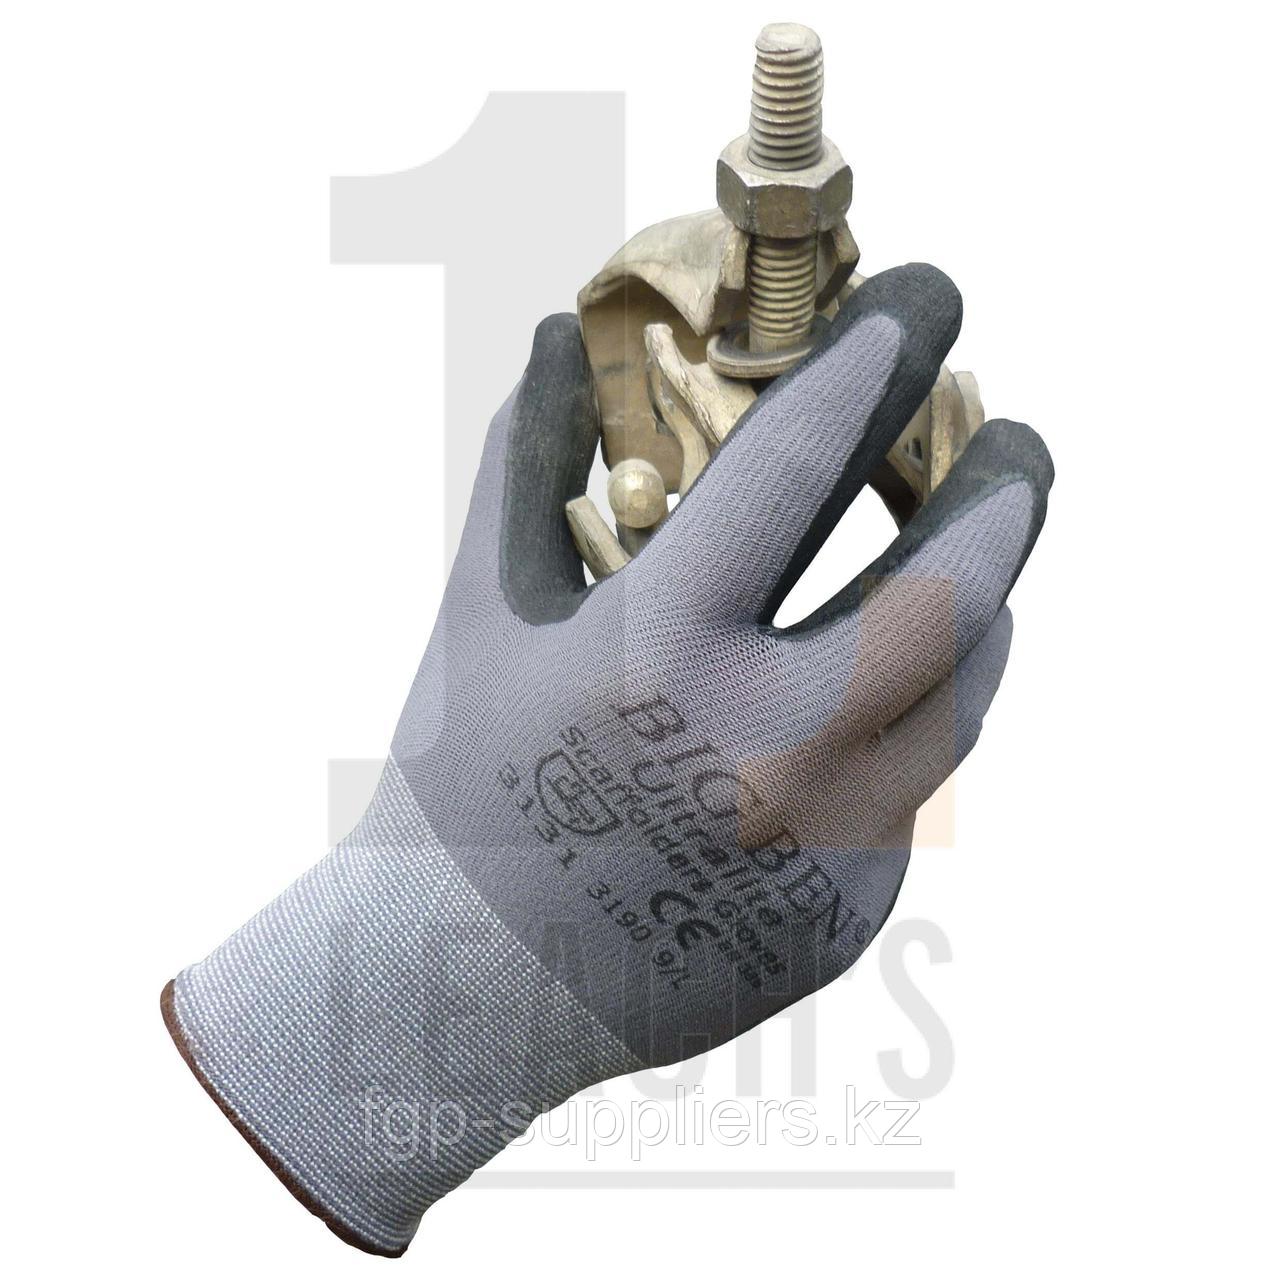 Big Ben Black Foam PU Nitrile Ultralite Scaffolders Gloves / Big Ben черные сверхлегкие нитриловые перчатки из ПУ поролона